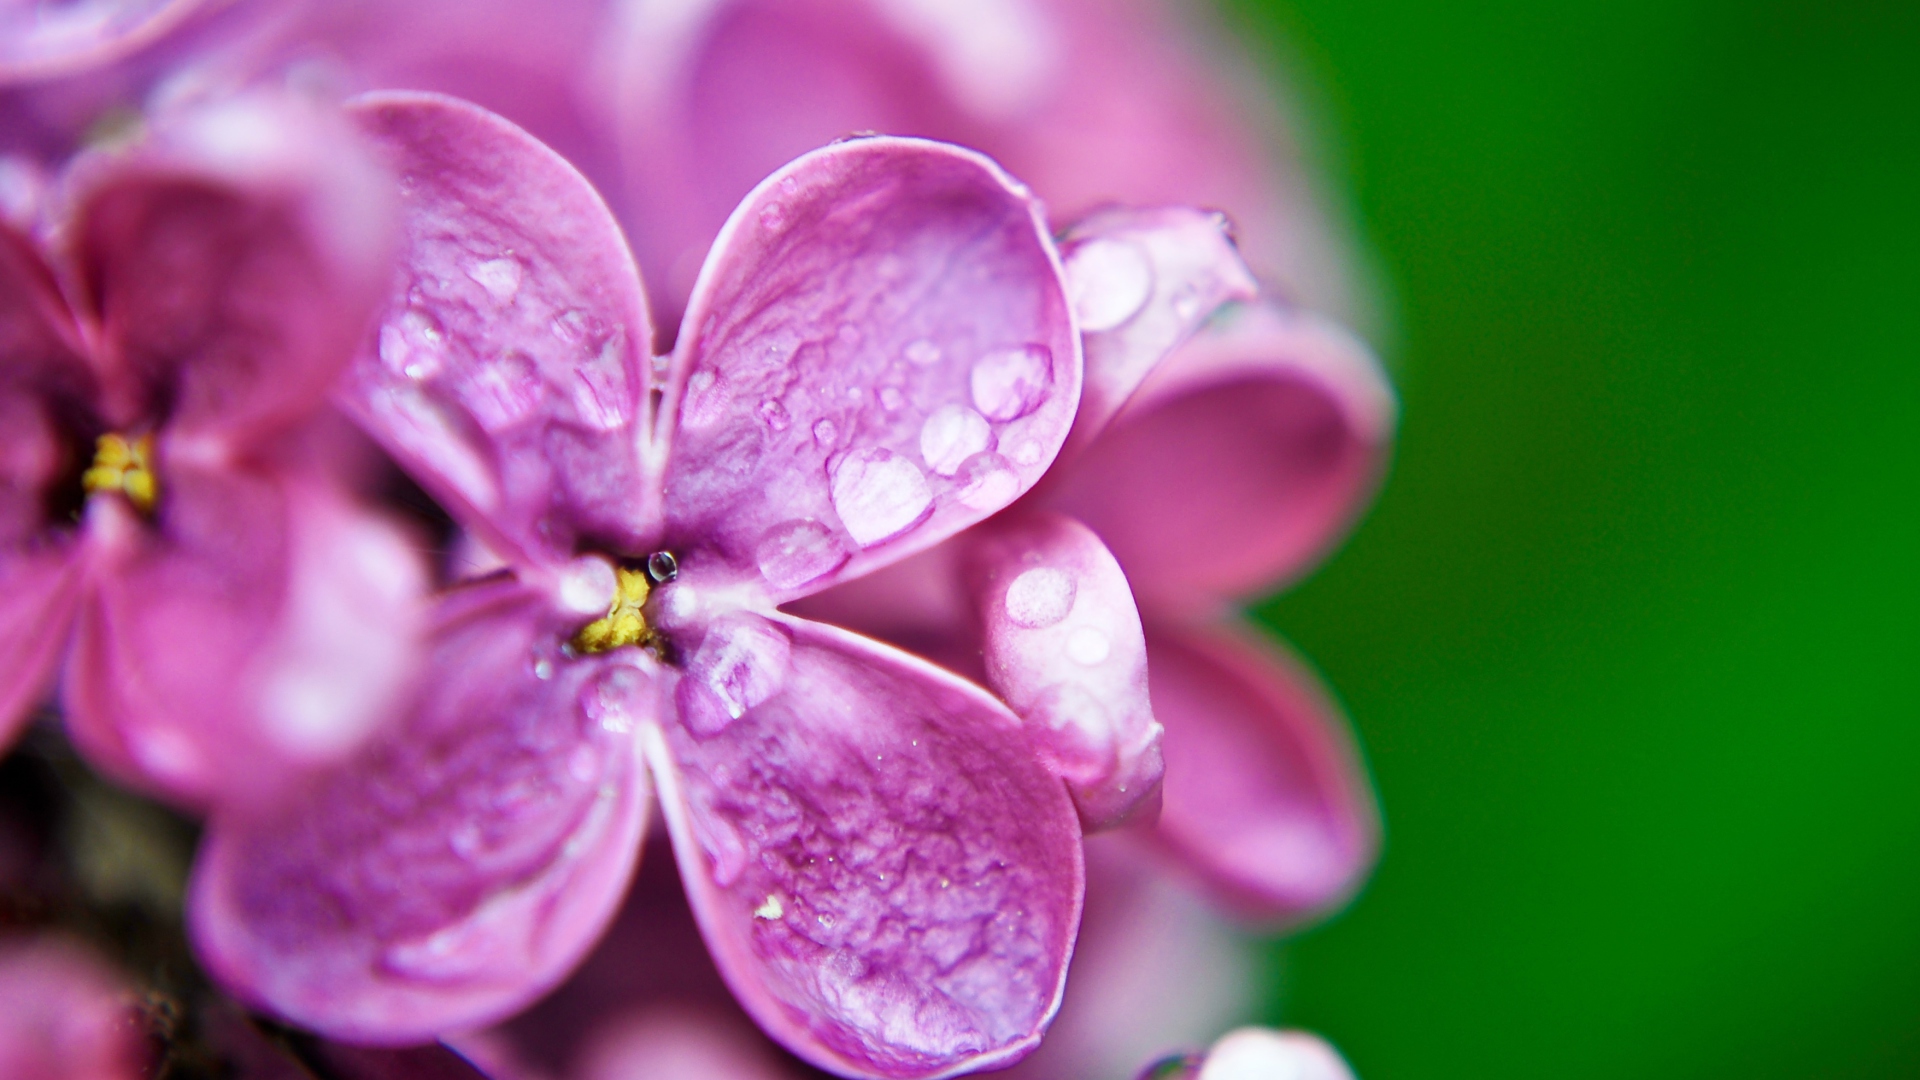 Обои Dew Drops On Purple Lilac Flowers 1920x1080